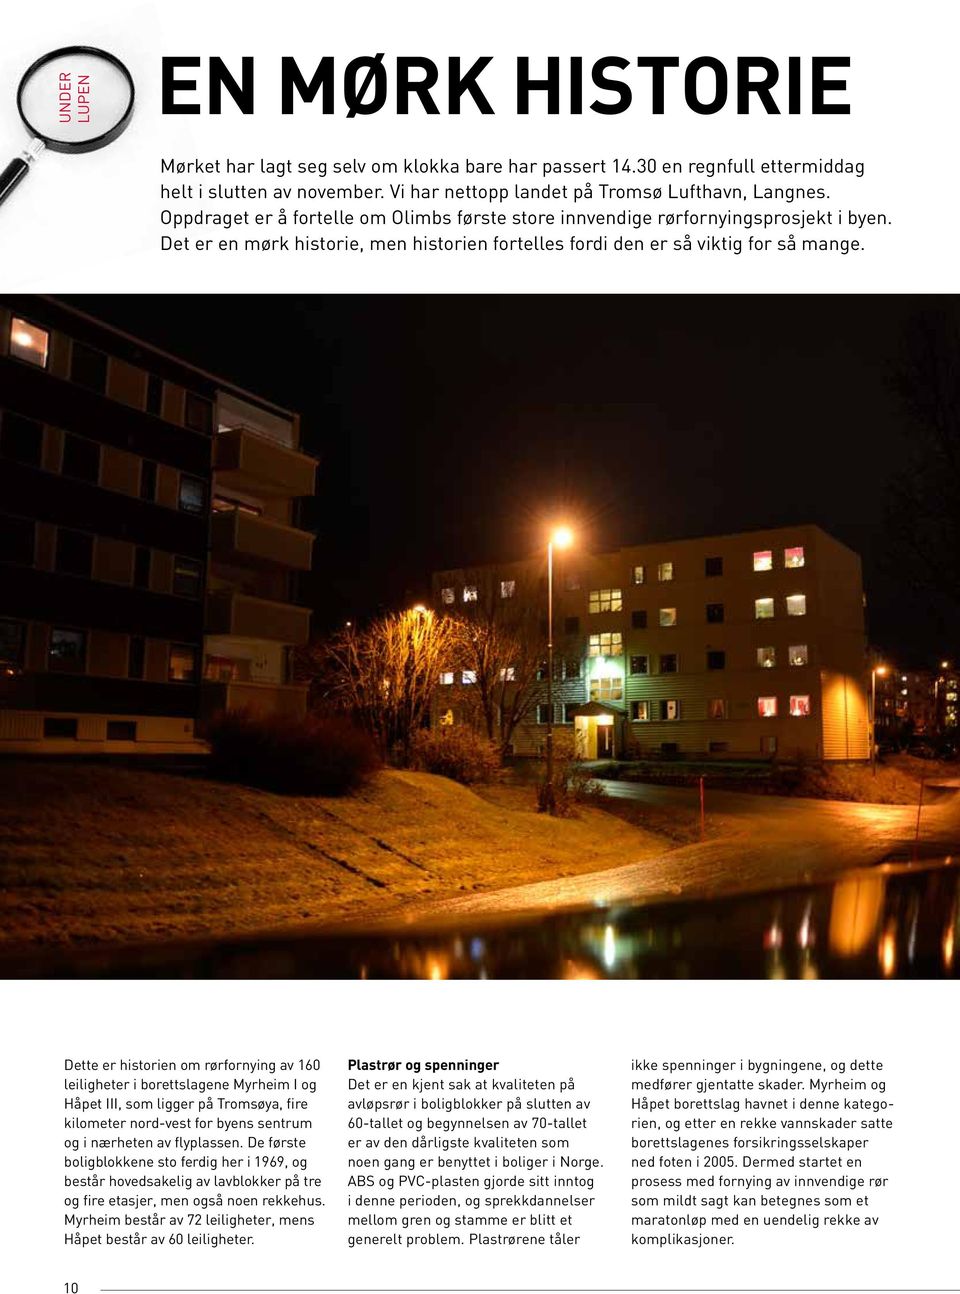 Dette er historien om rørfornying av 160 leiligheter i borettslagene Myrheim I og Håpet III, som ligger på Tromsøya, fire kilometer nord-vest for byens sentrum og i nærheten av flyplassen.